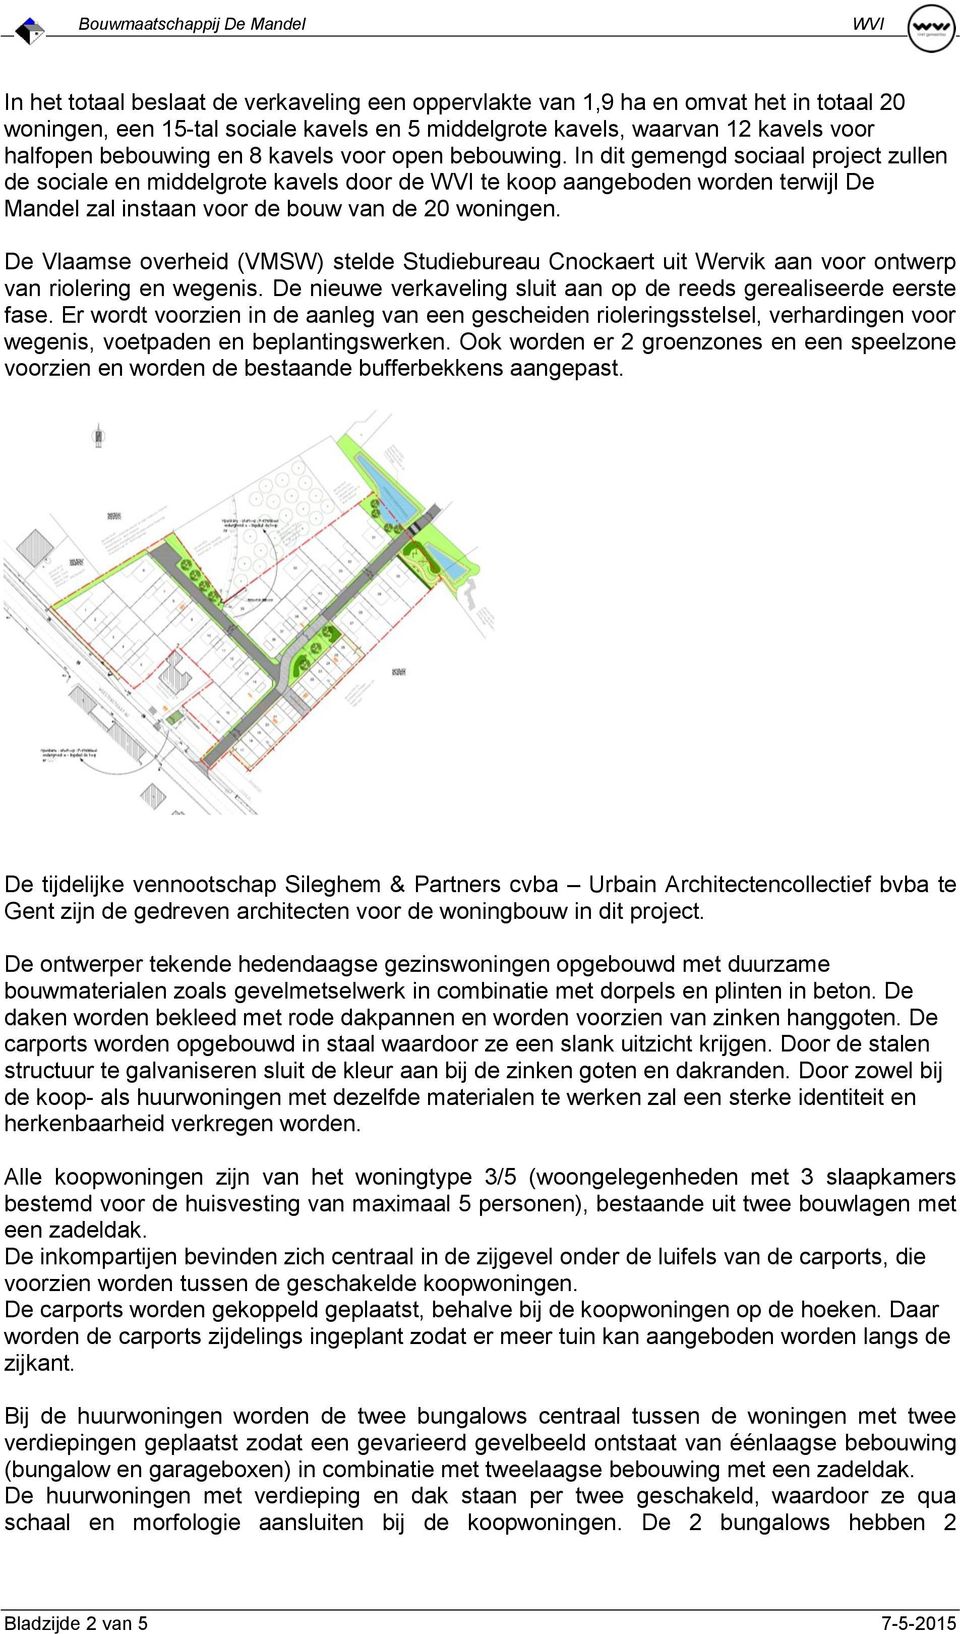 De Vlaamse overheid (VMSW) stelde Studiebureau Cnockaert uit Wervik aan voor ontwerp van riolering en wegenis. De nieuwe verkaveling sluit aan op de reeds gerealiseerde eerste fase.